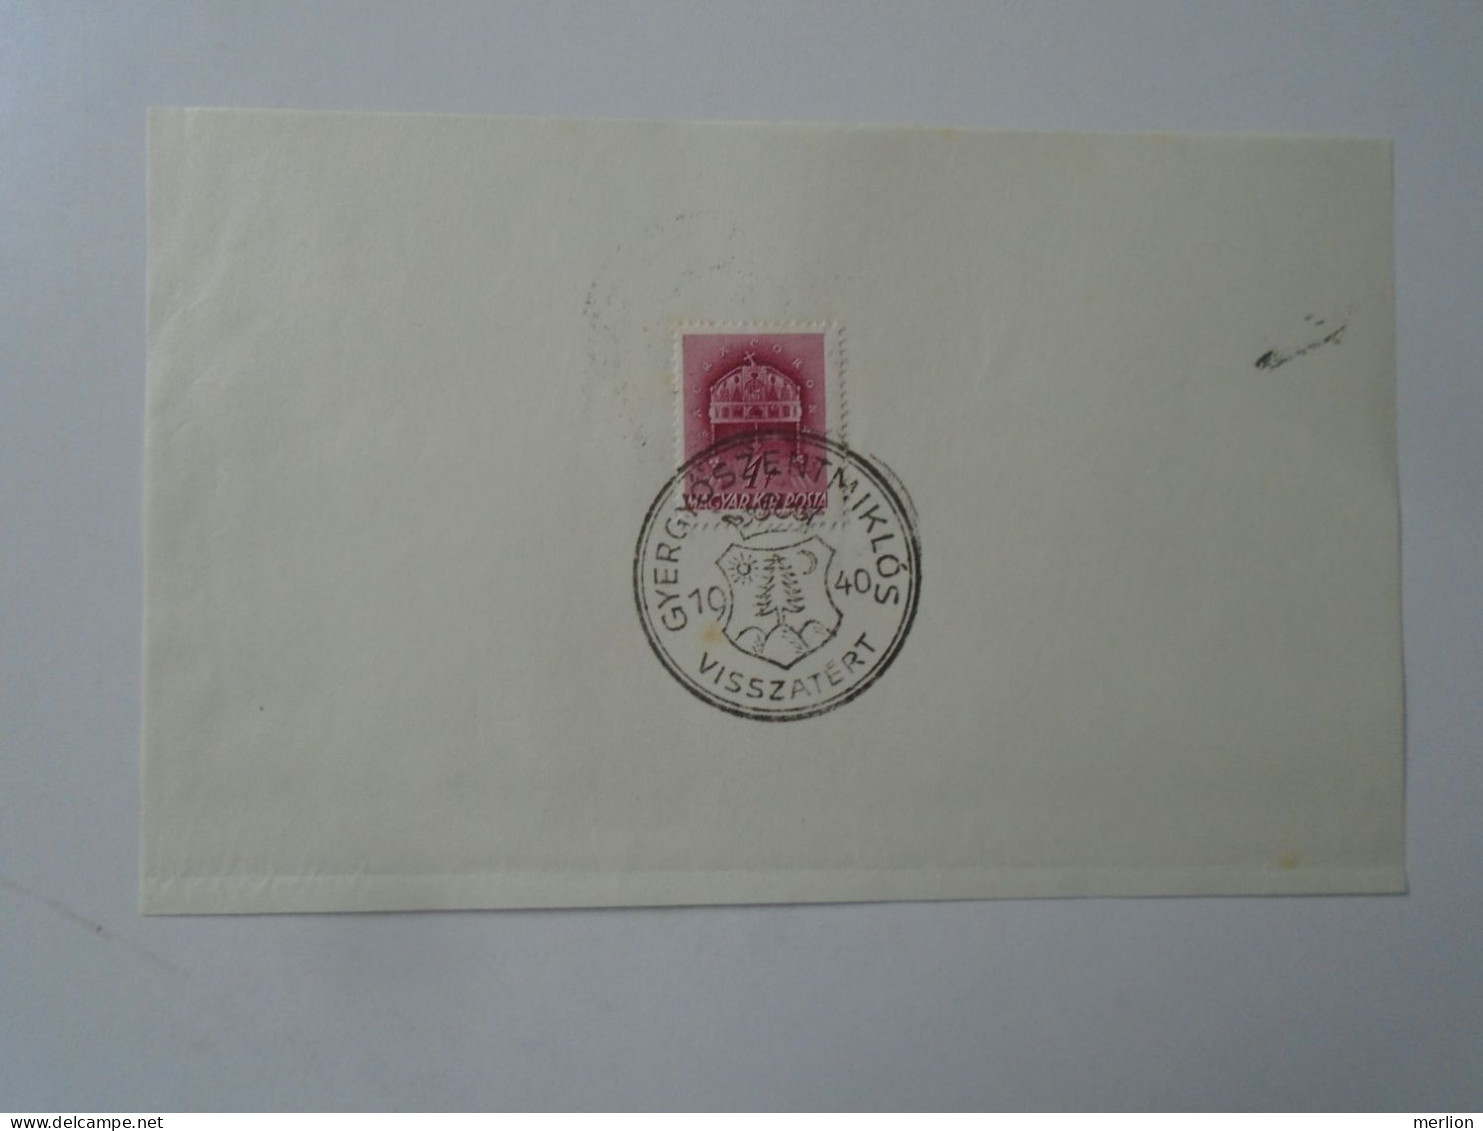 ZA451.43  Hungary -GYERGYÓSZENTMIKLÓS   Visszatért -Commemorative Postmark 1940 - Marcofilie